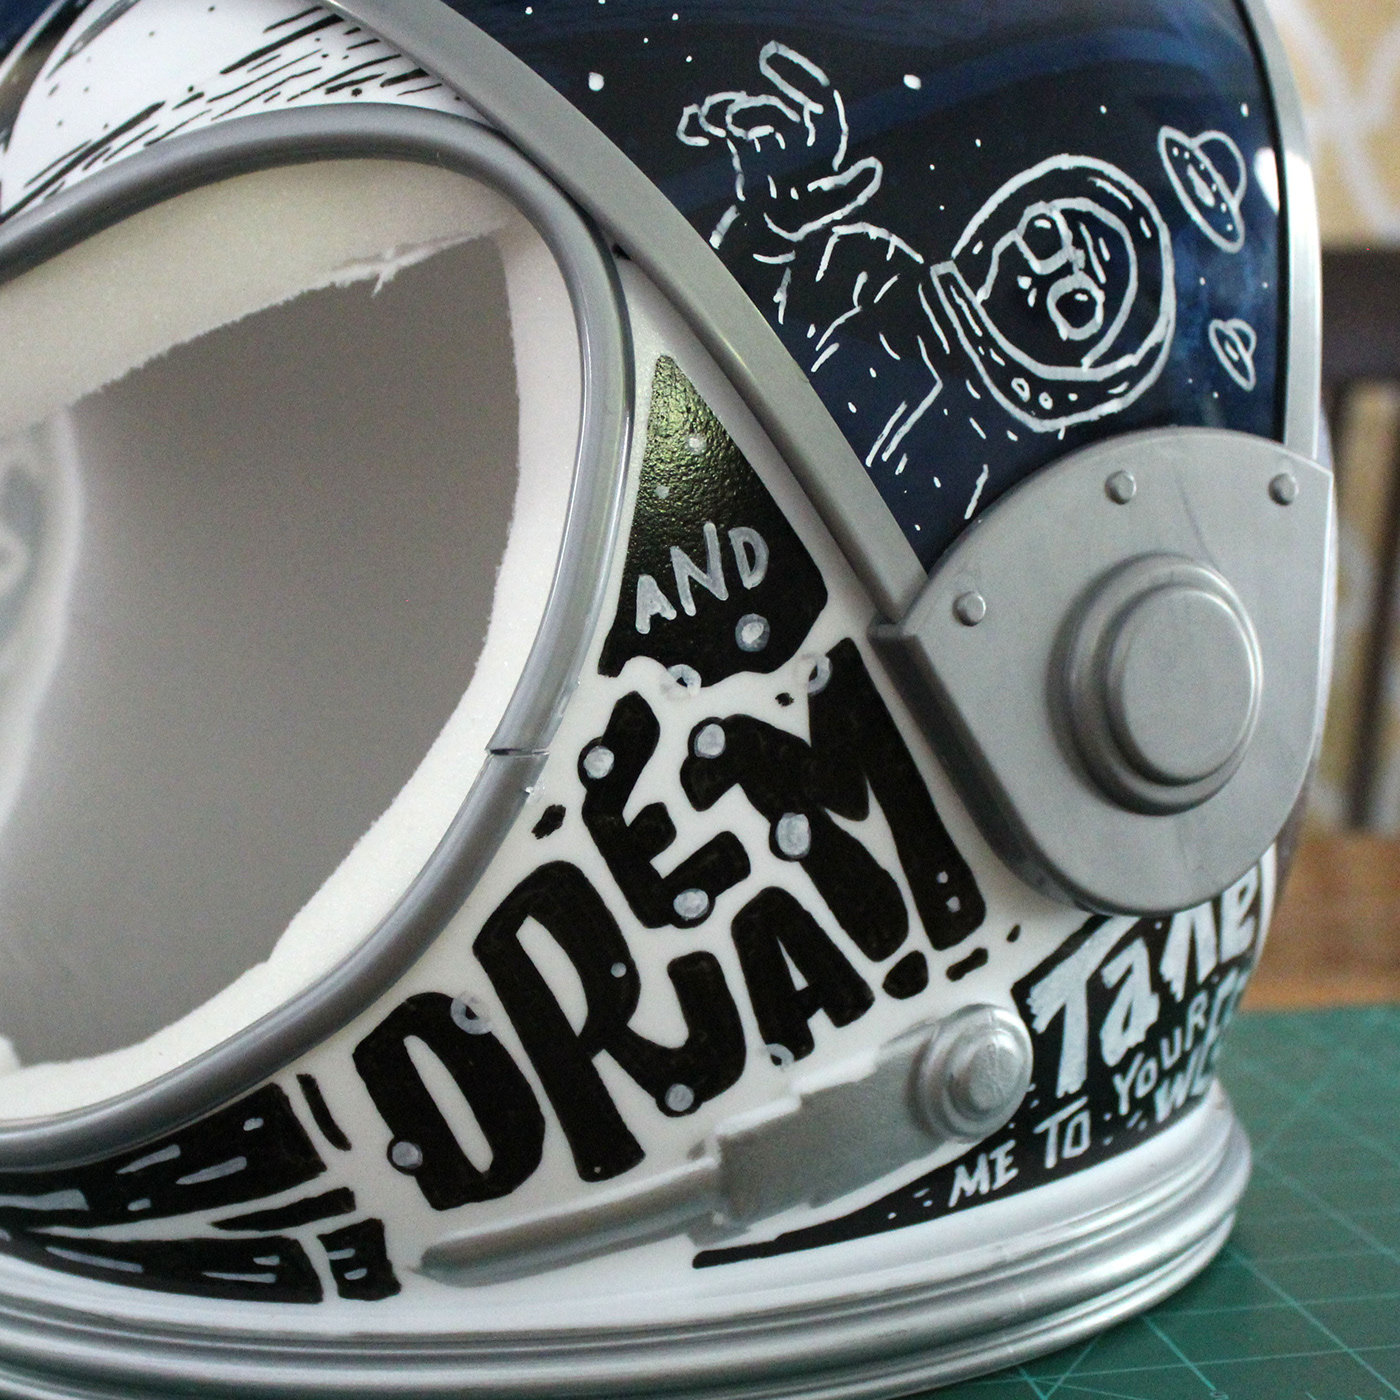 space helmet